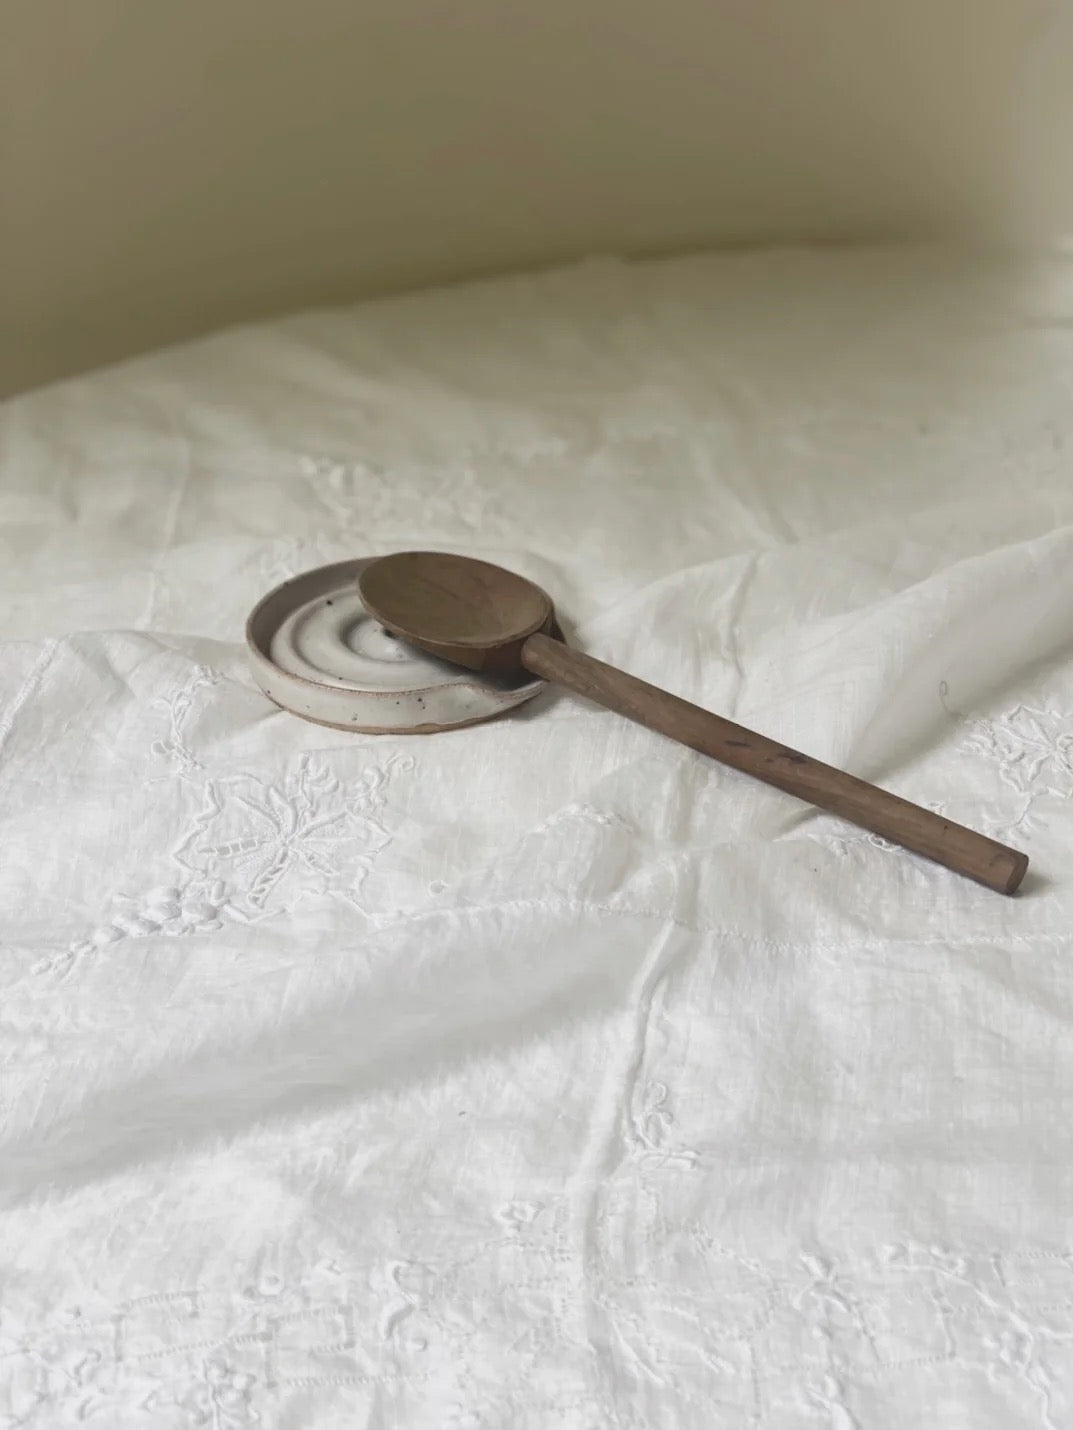 A deborah sweeney Spoon Rest – Cloud on top of a white sheet.